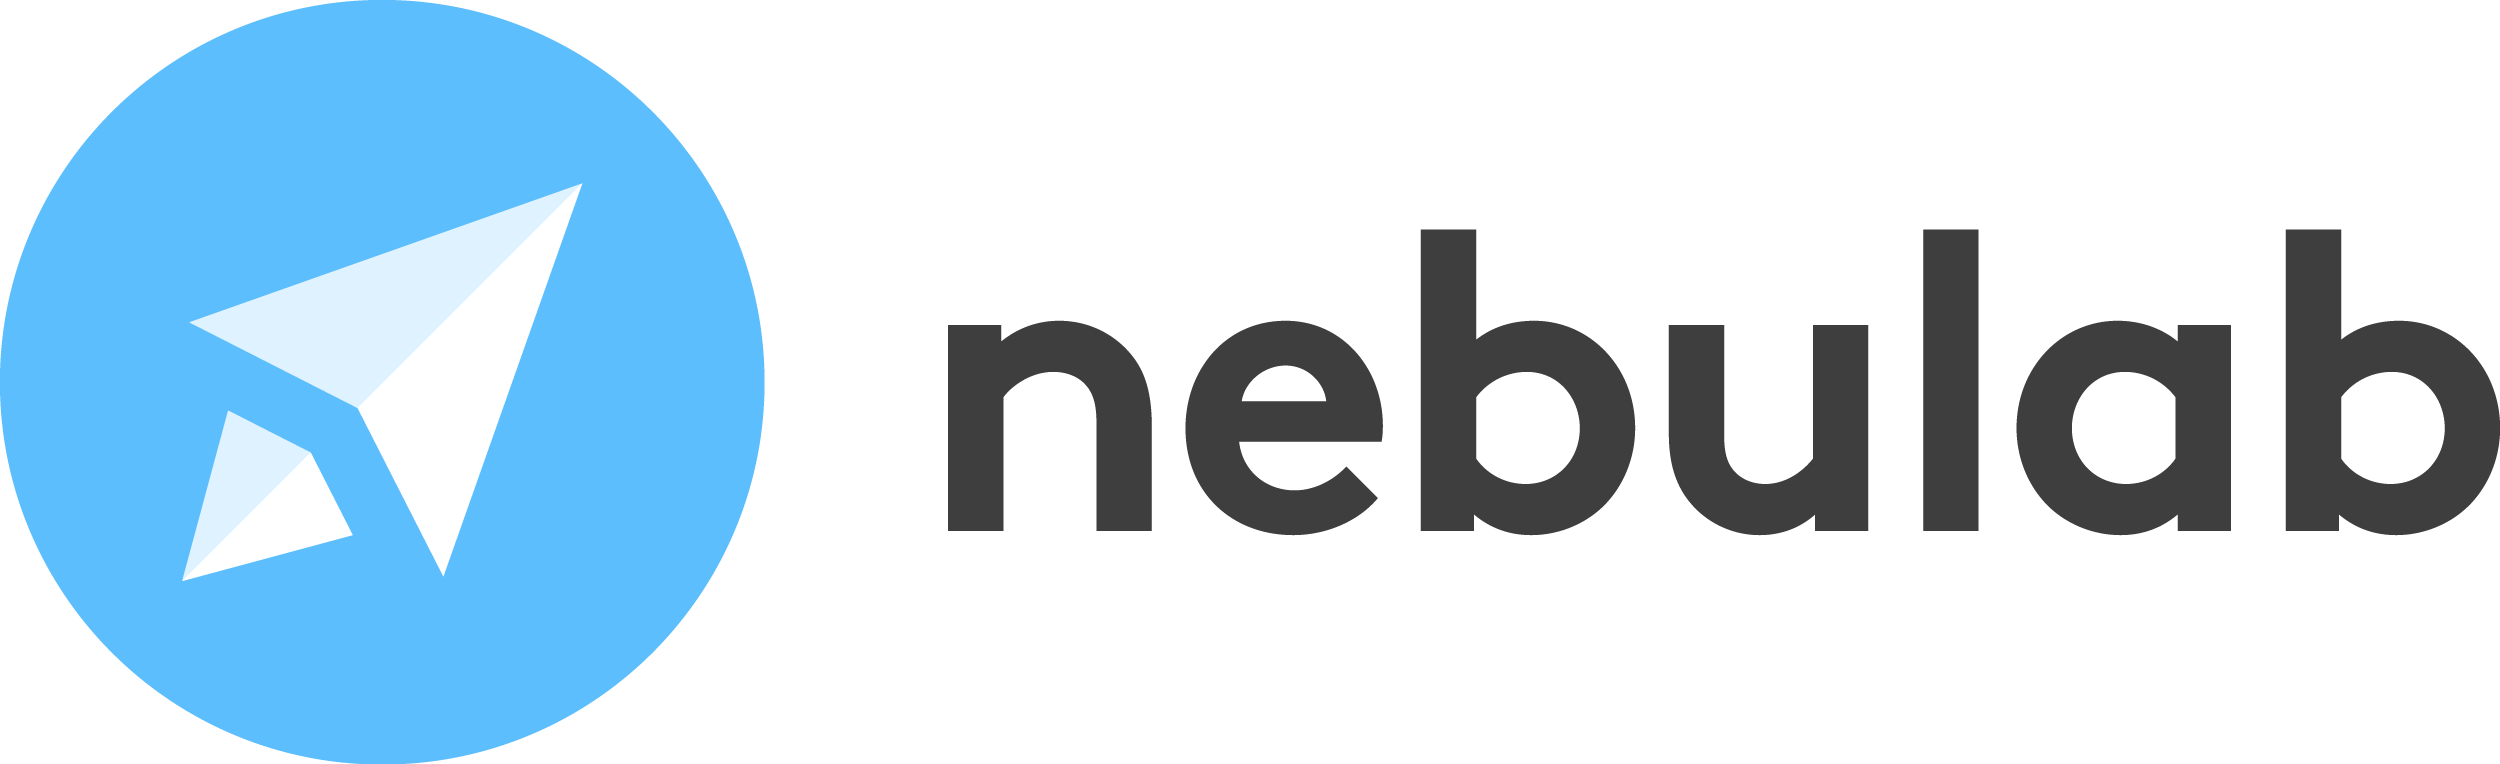 nebulab